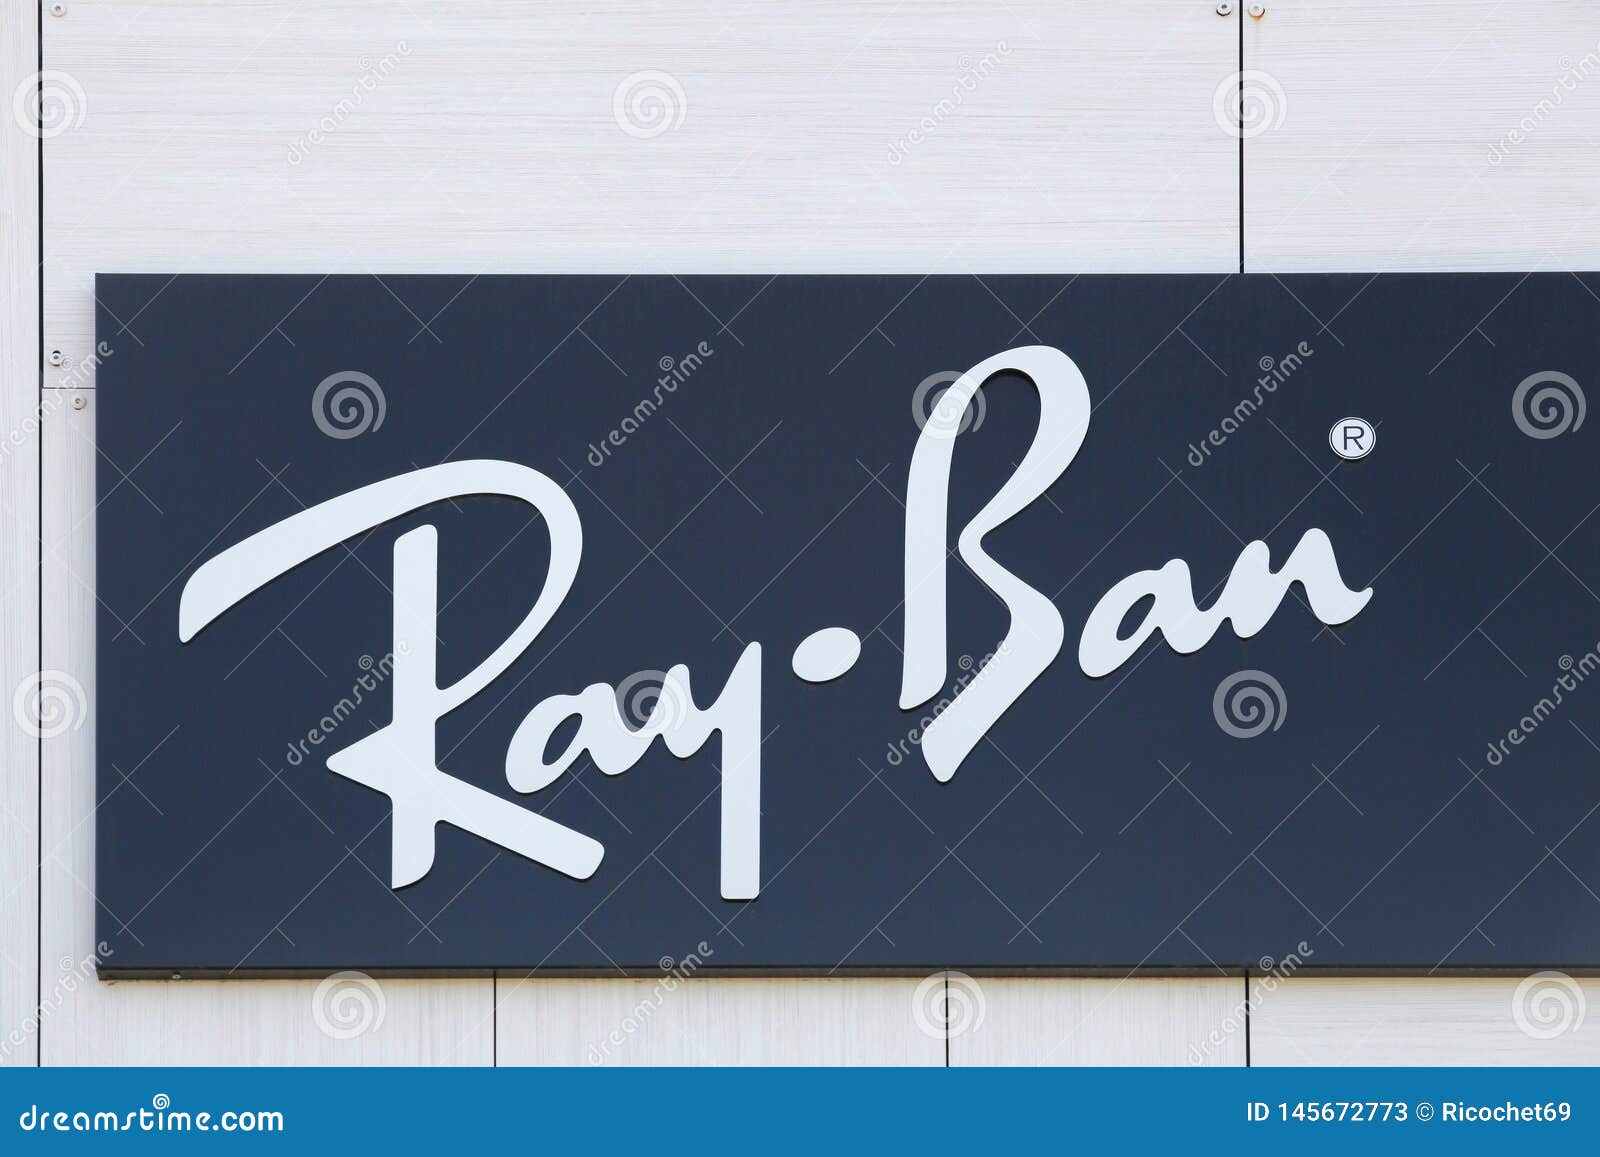 ray ban symbol